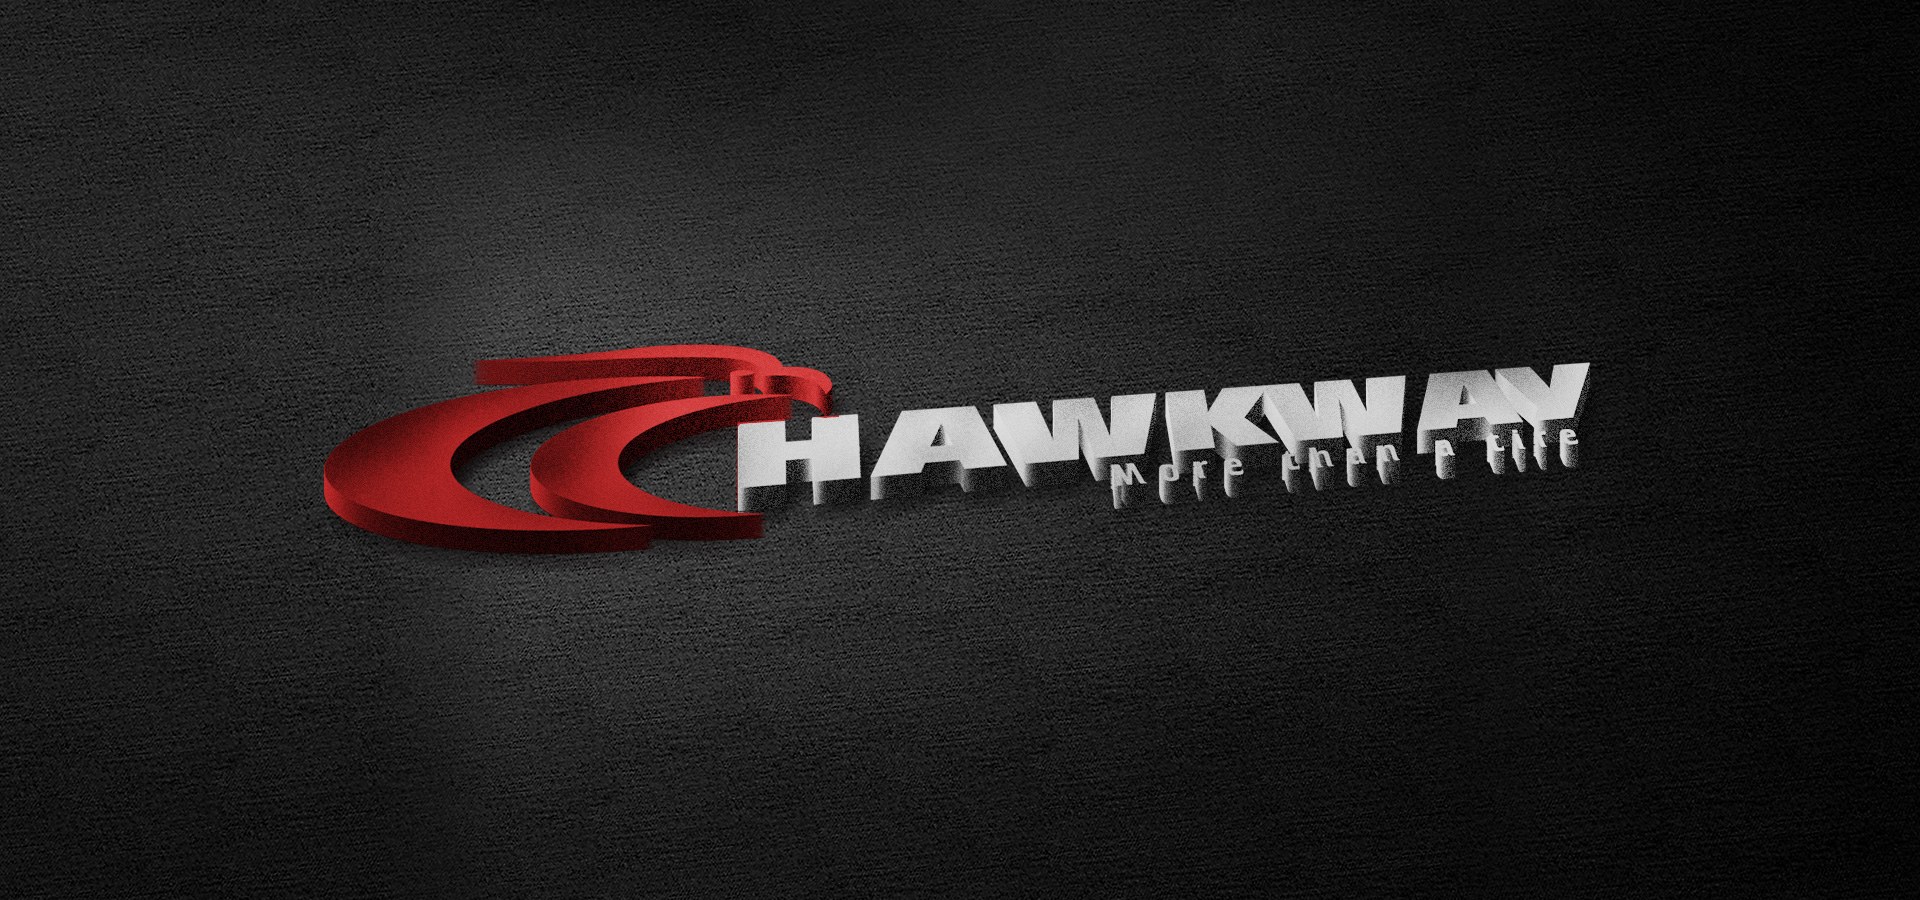 Hawkway tyre since 1975